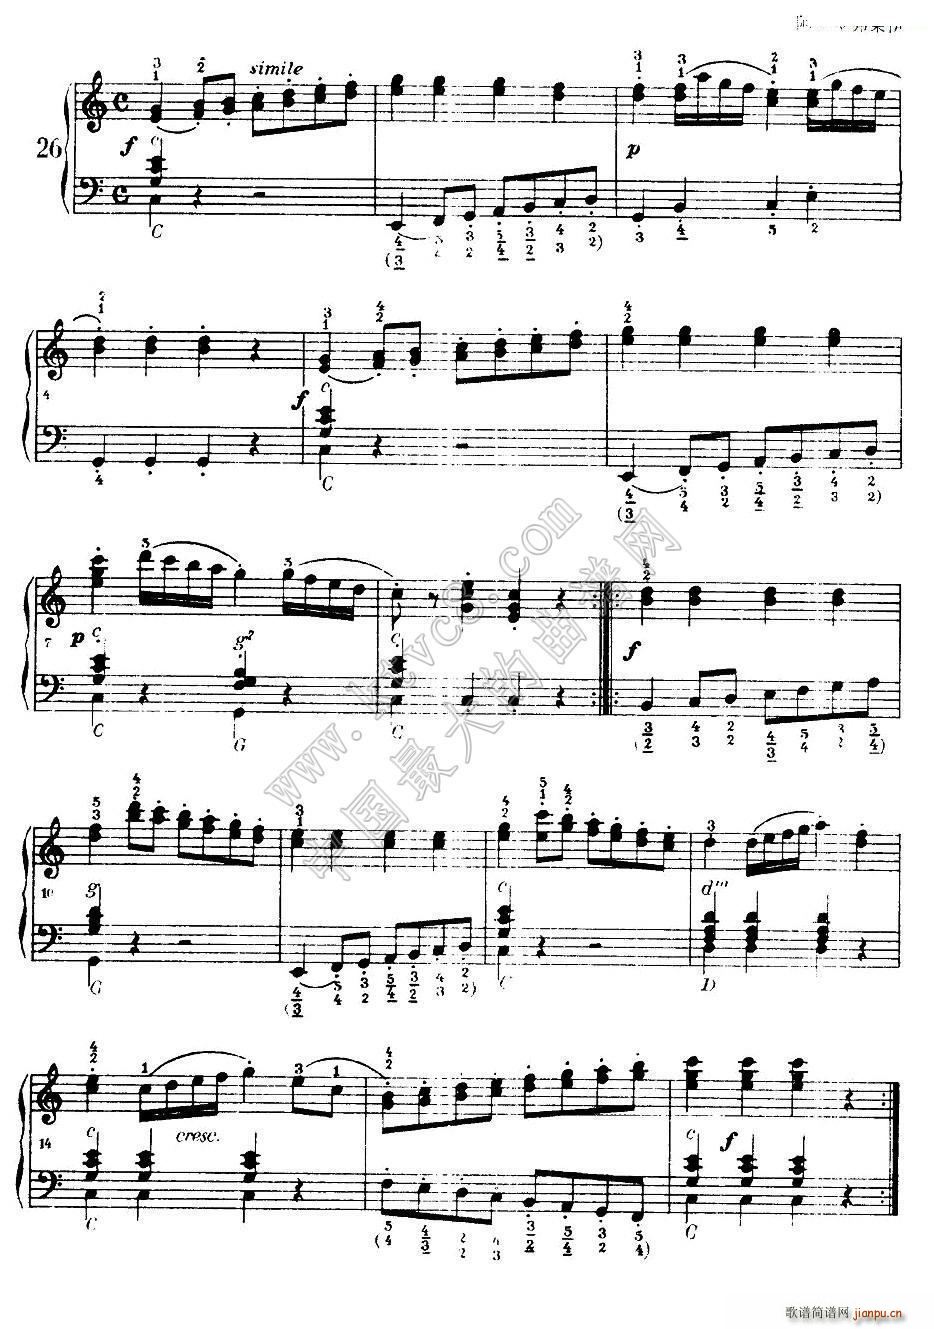 车尔尼手风琴练习曲集 第Ⅰ册 22 36(手风琴谱)5